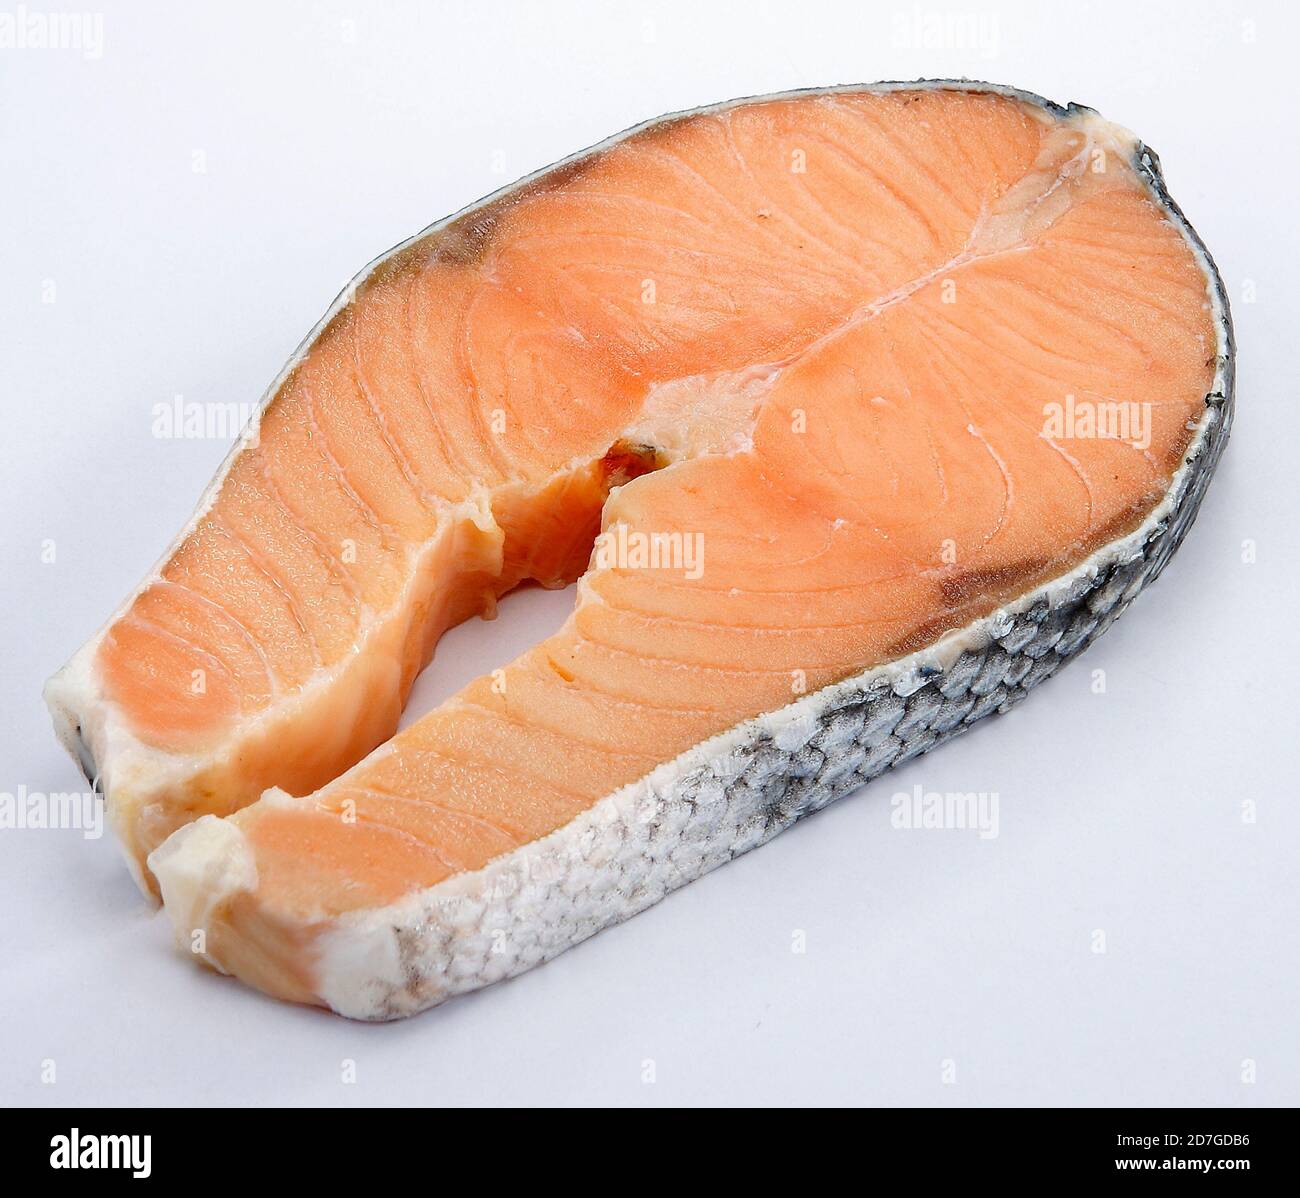 Lachs ist ein gewöhnliches Lebensmittel, das als öliger Fisch mit einem  reichen Gehalt an Protein und Omega-3-Fettsäuren eingestuft ist  Stockfotografie - Alamy